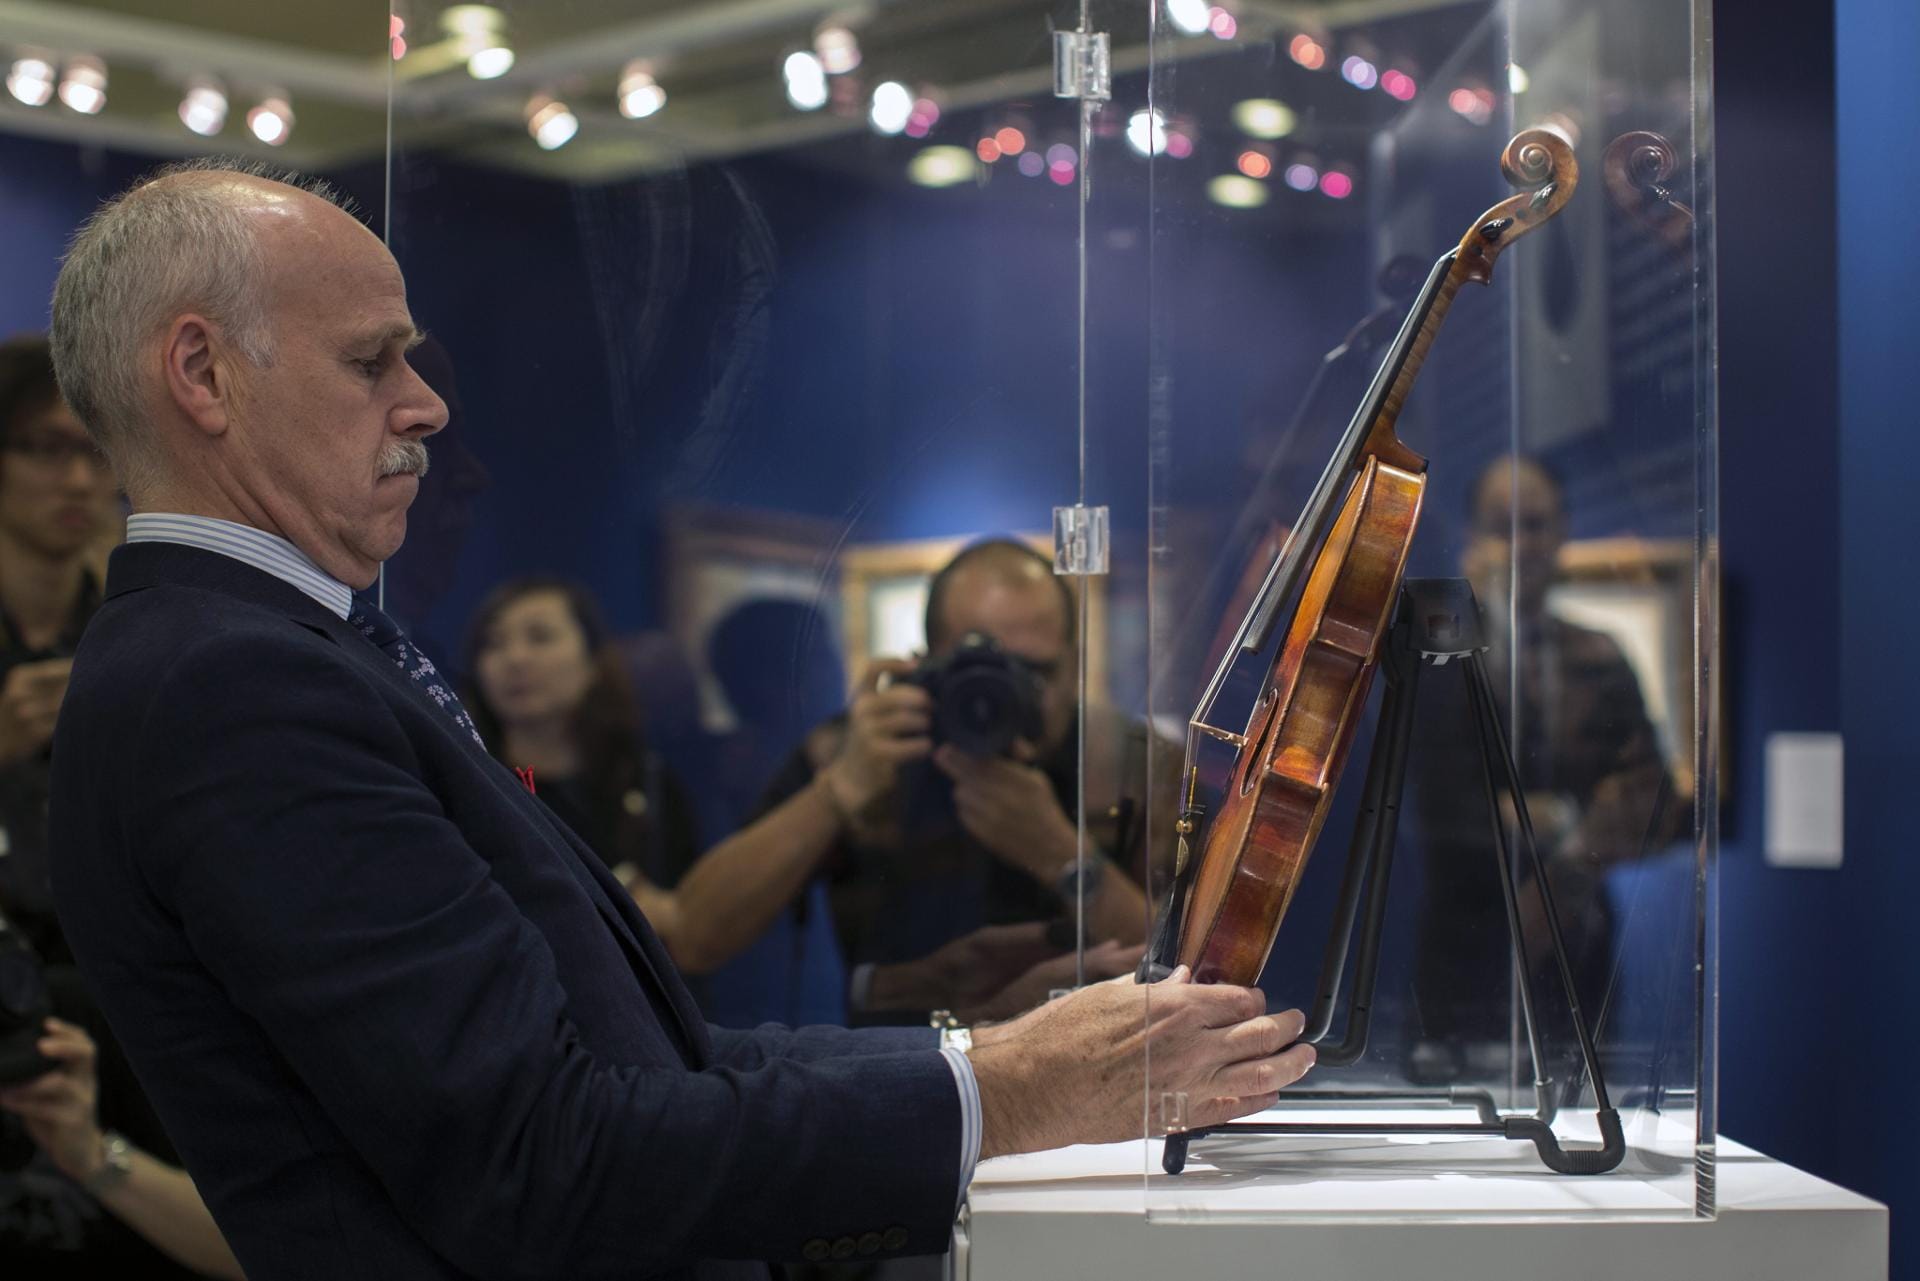 Zu den Highlights bei den Auktionen von Christie's zählen wertvolle Musikinstrumente wie diese Violine von Stradivari.